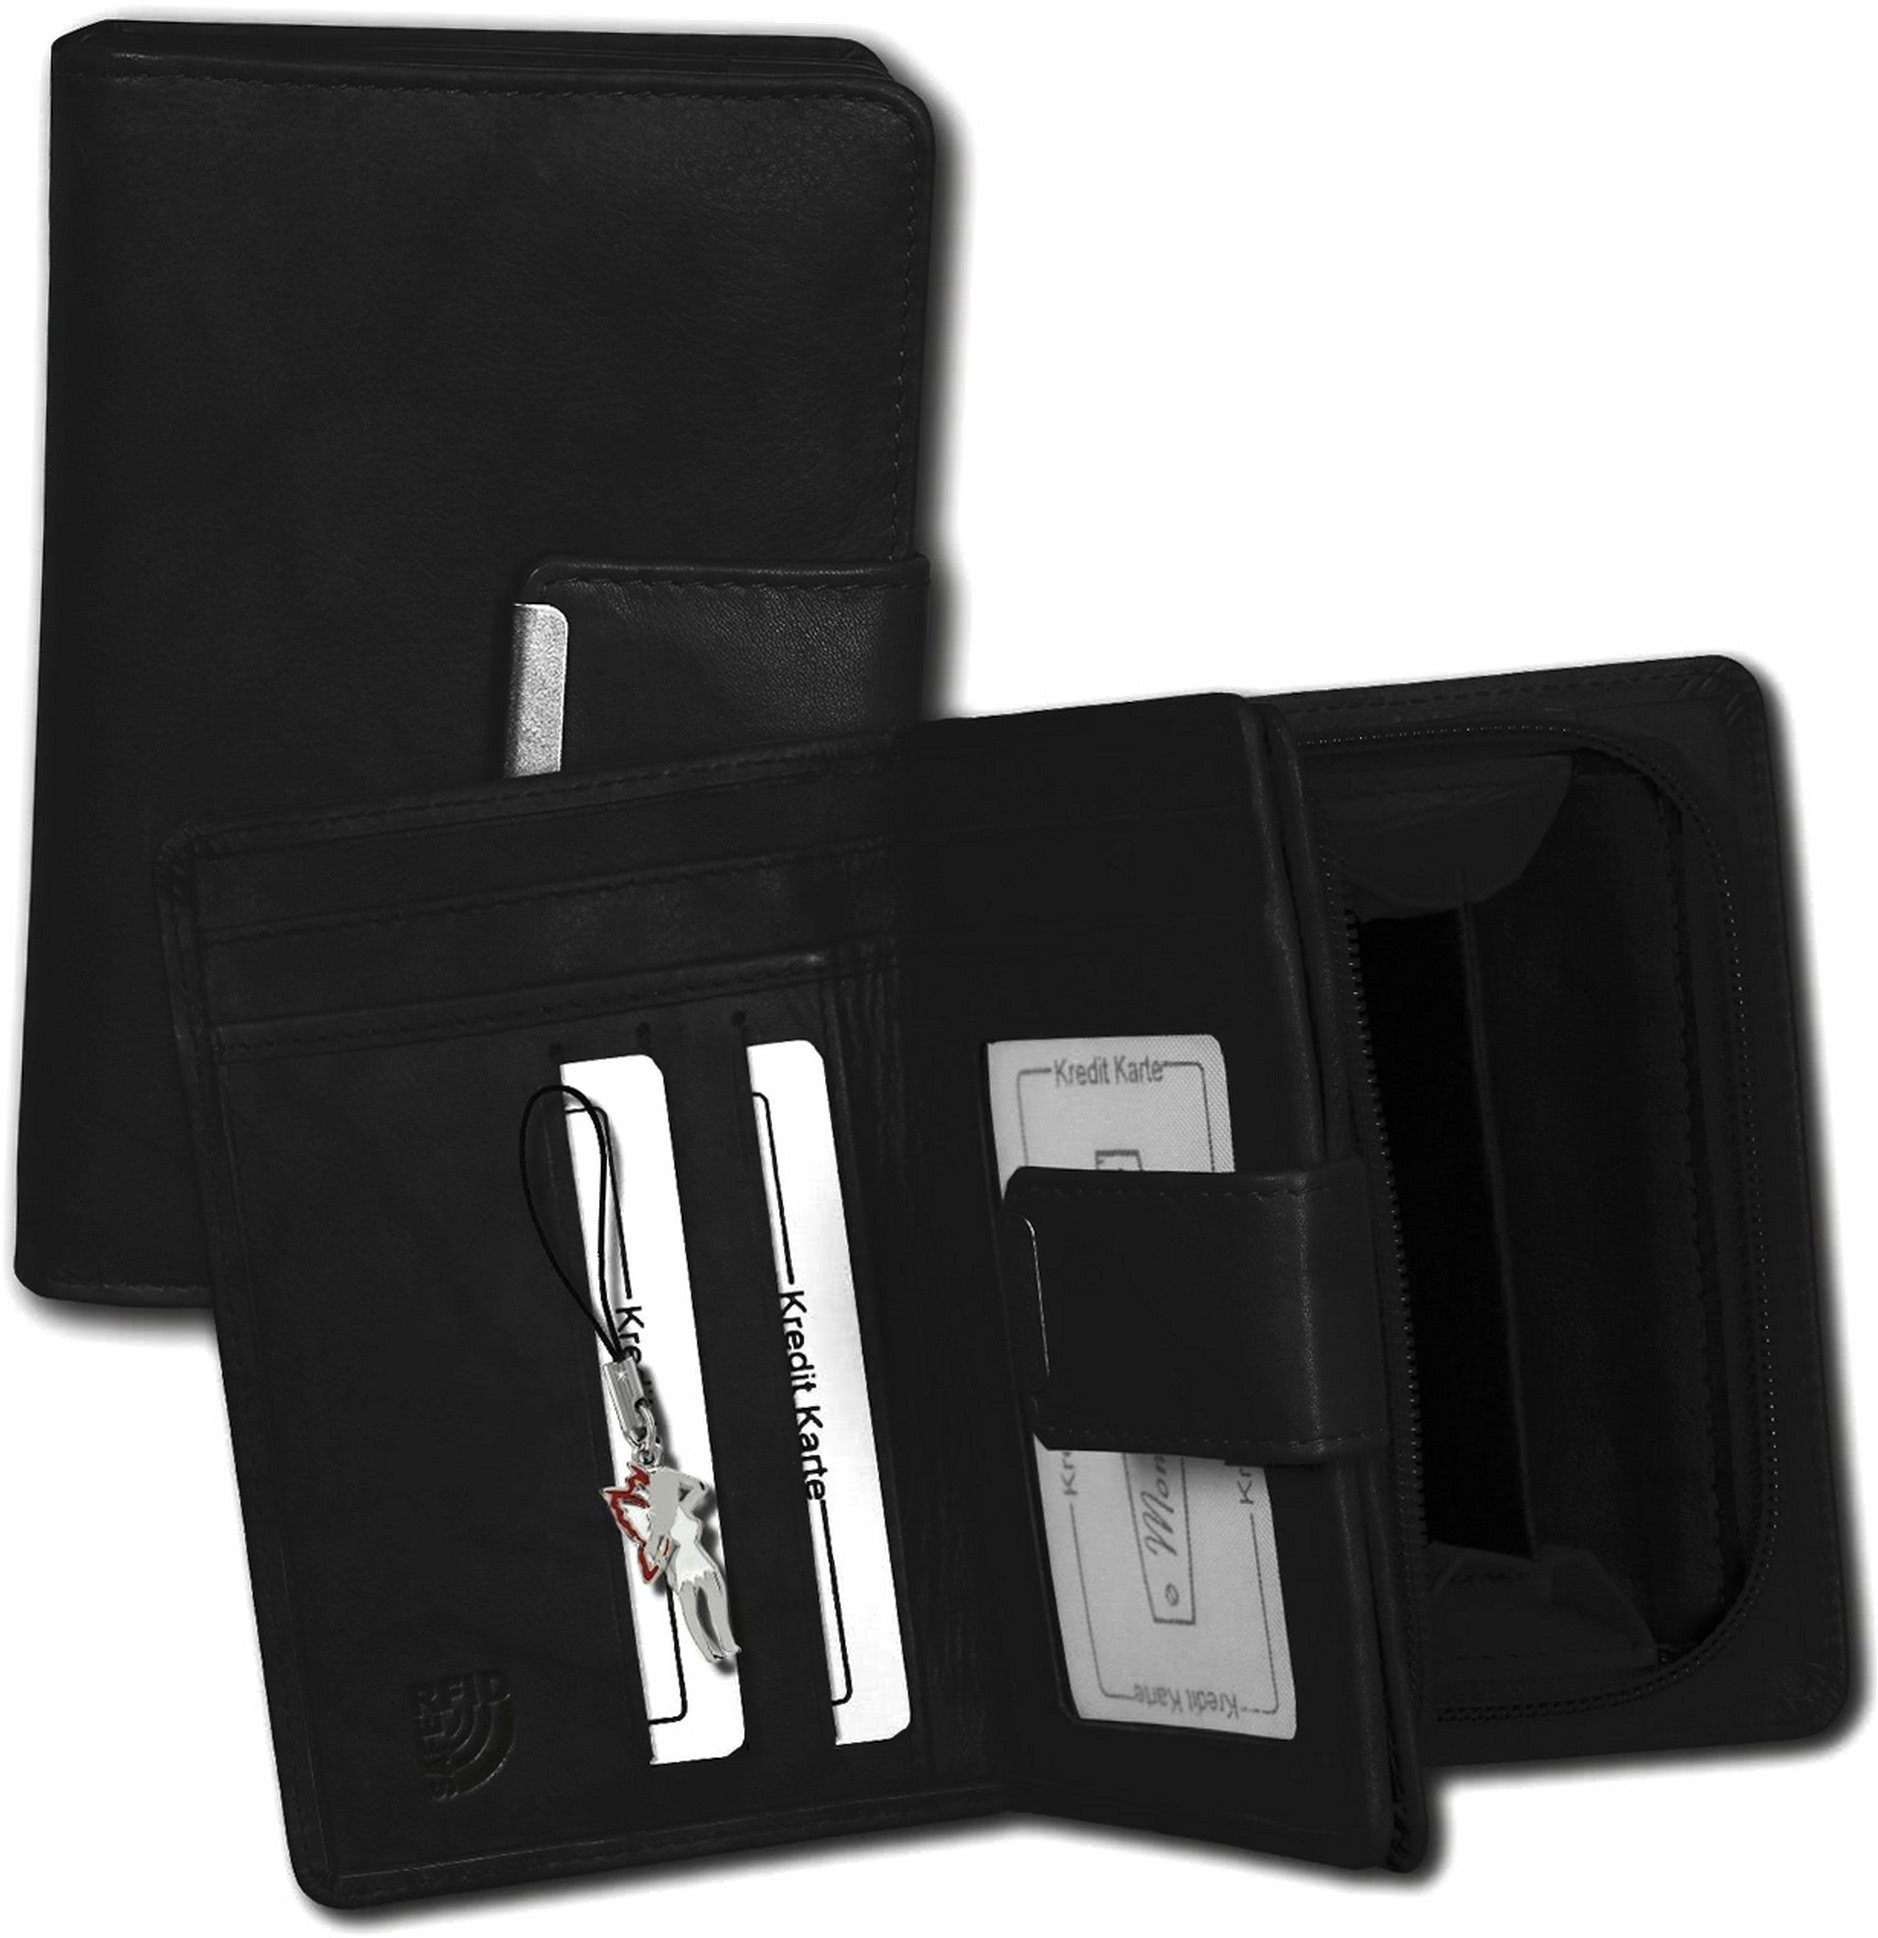 Money Maker Geldbörse Money Maker RFID Blocker Echtleder (Portemonnaie, Portemonnaie), Portemonnaie aus Echtleder schwarz, Größe ca. 9cm